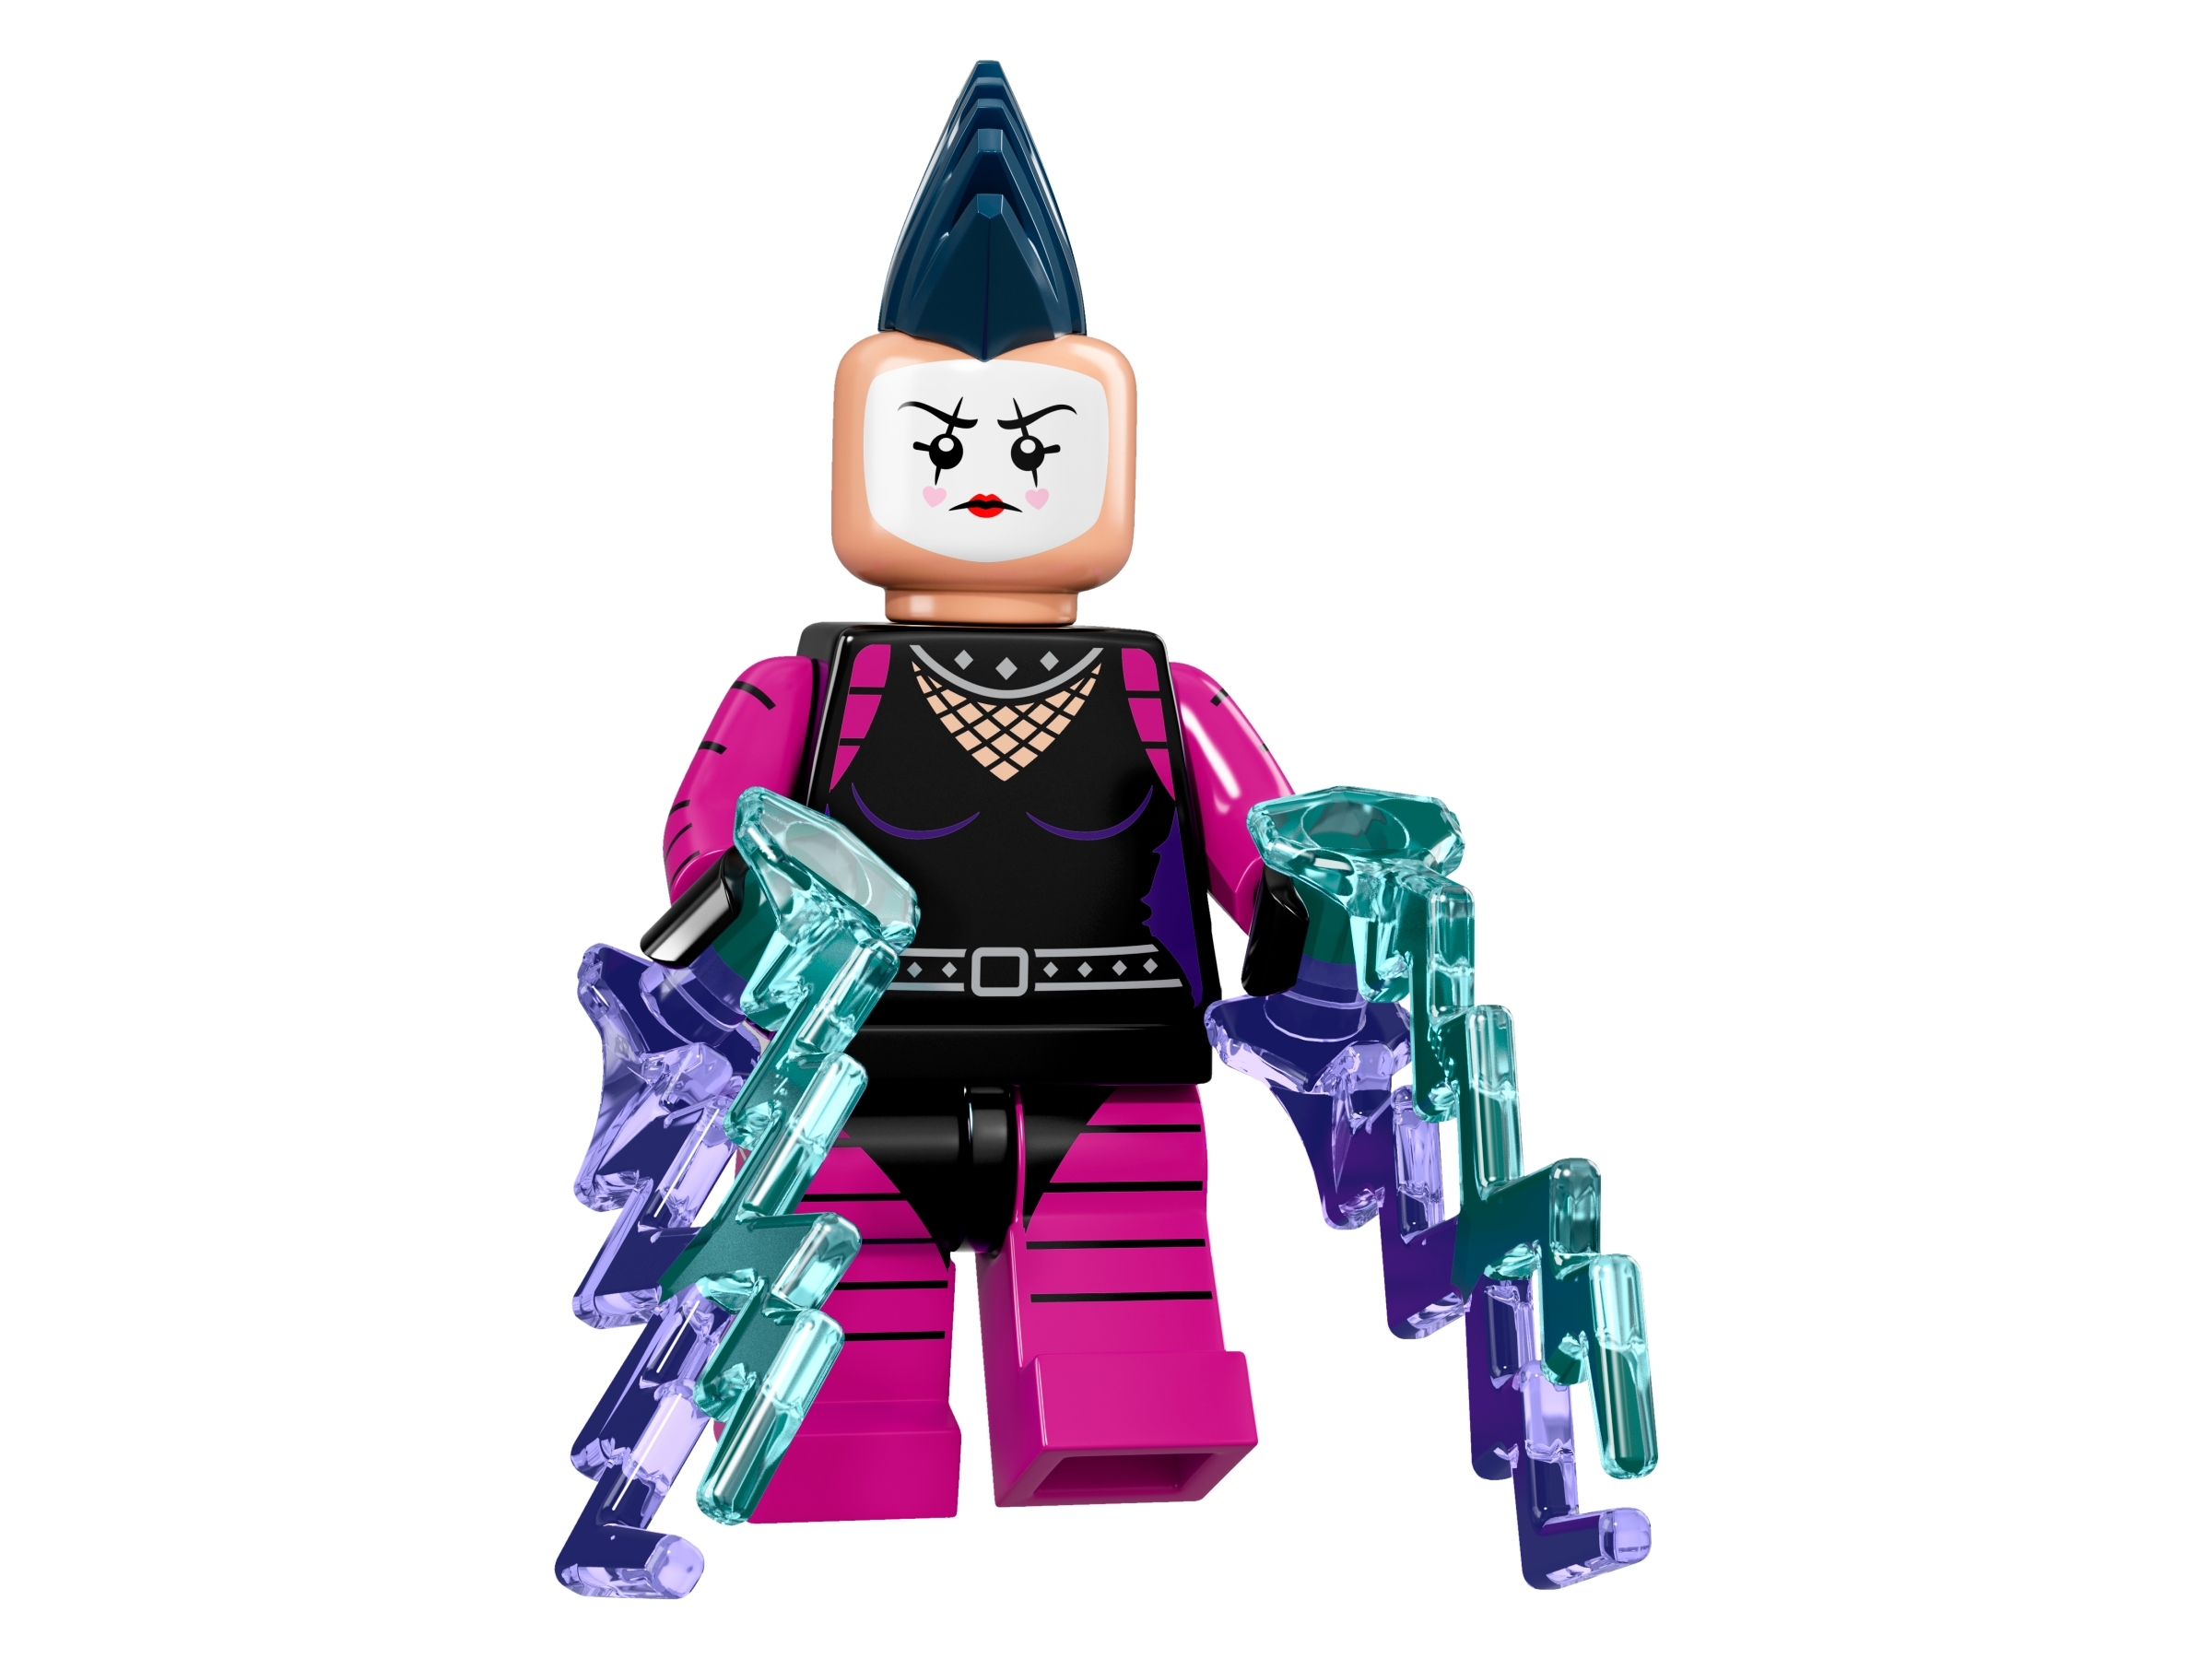 Lego Batman Movie Minifigures for sale online 71017 